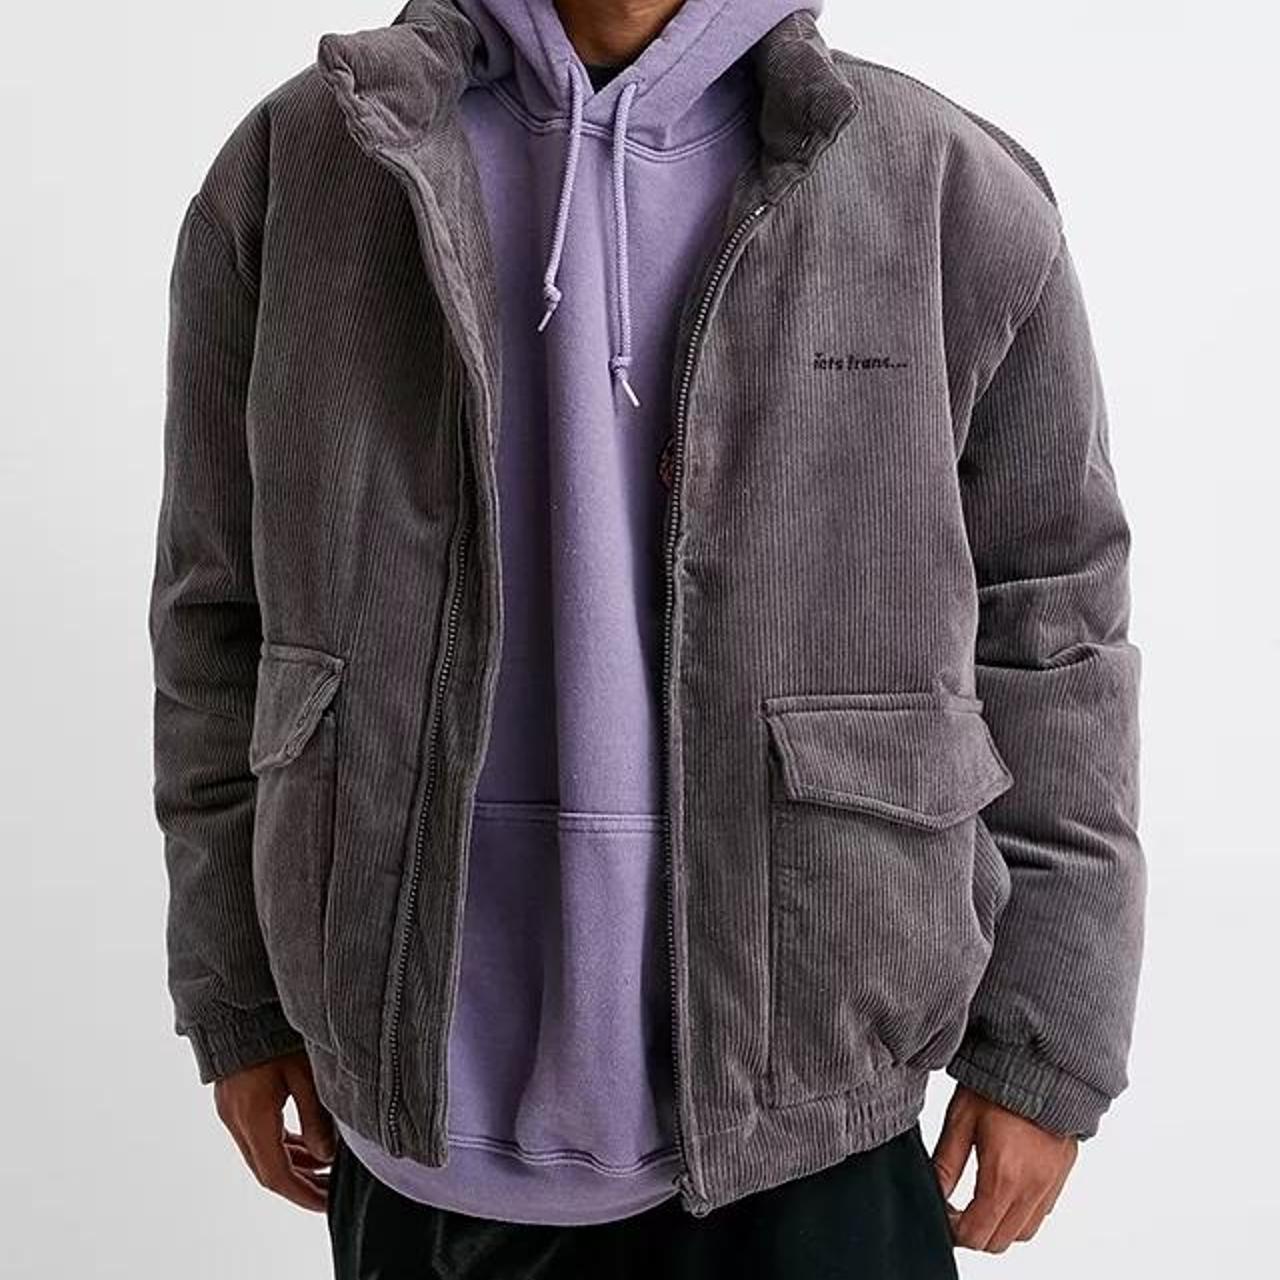 Urban - Lets Frans Corduroy Puffer Jacket Label size... - Depop